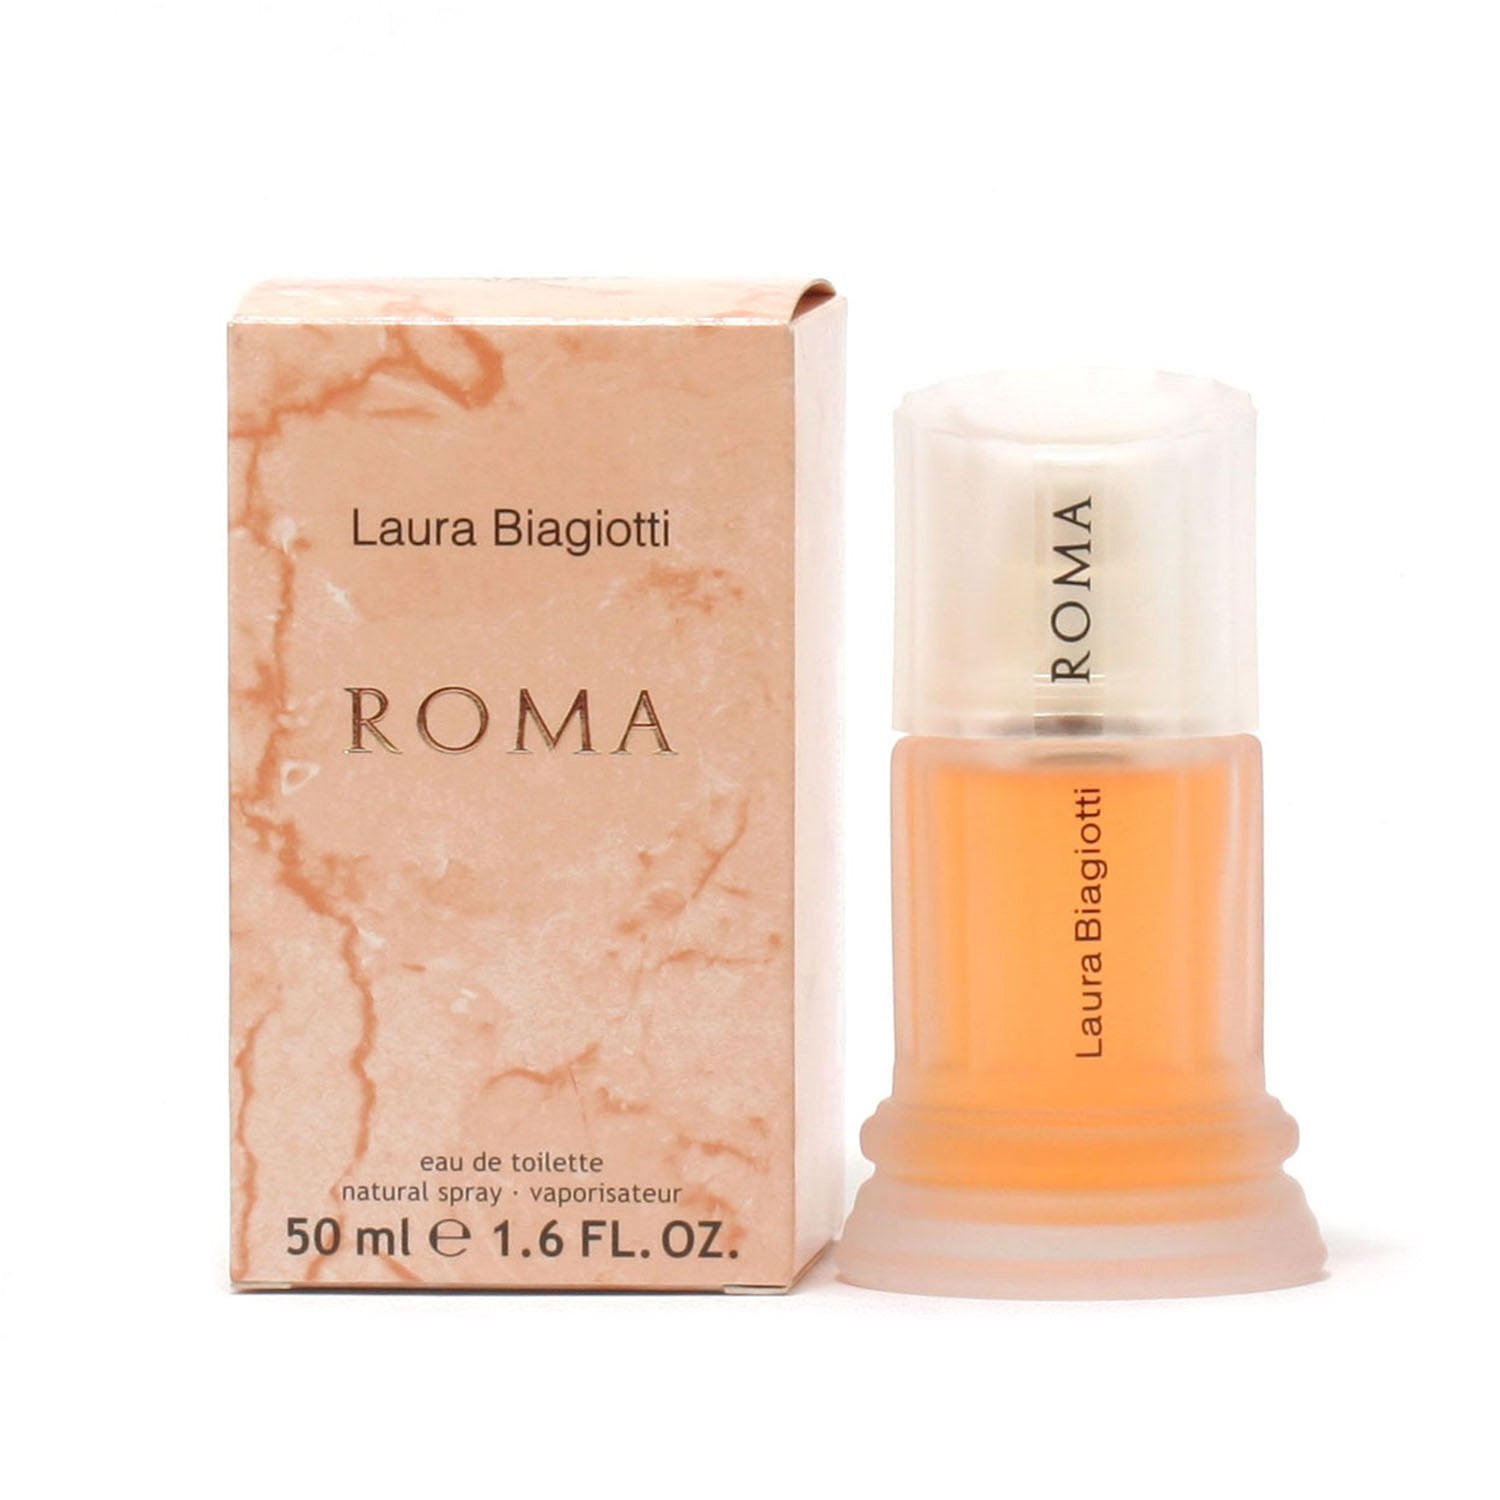 Laura Biagiotti fragrance